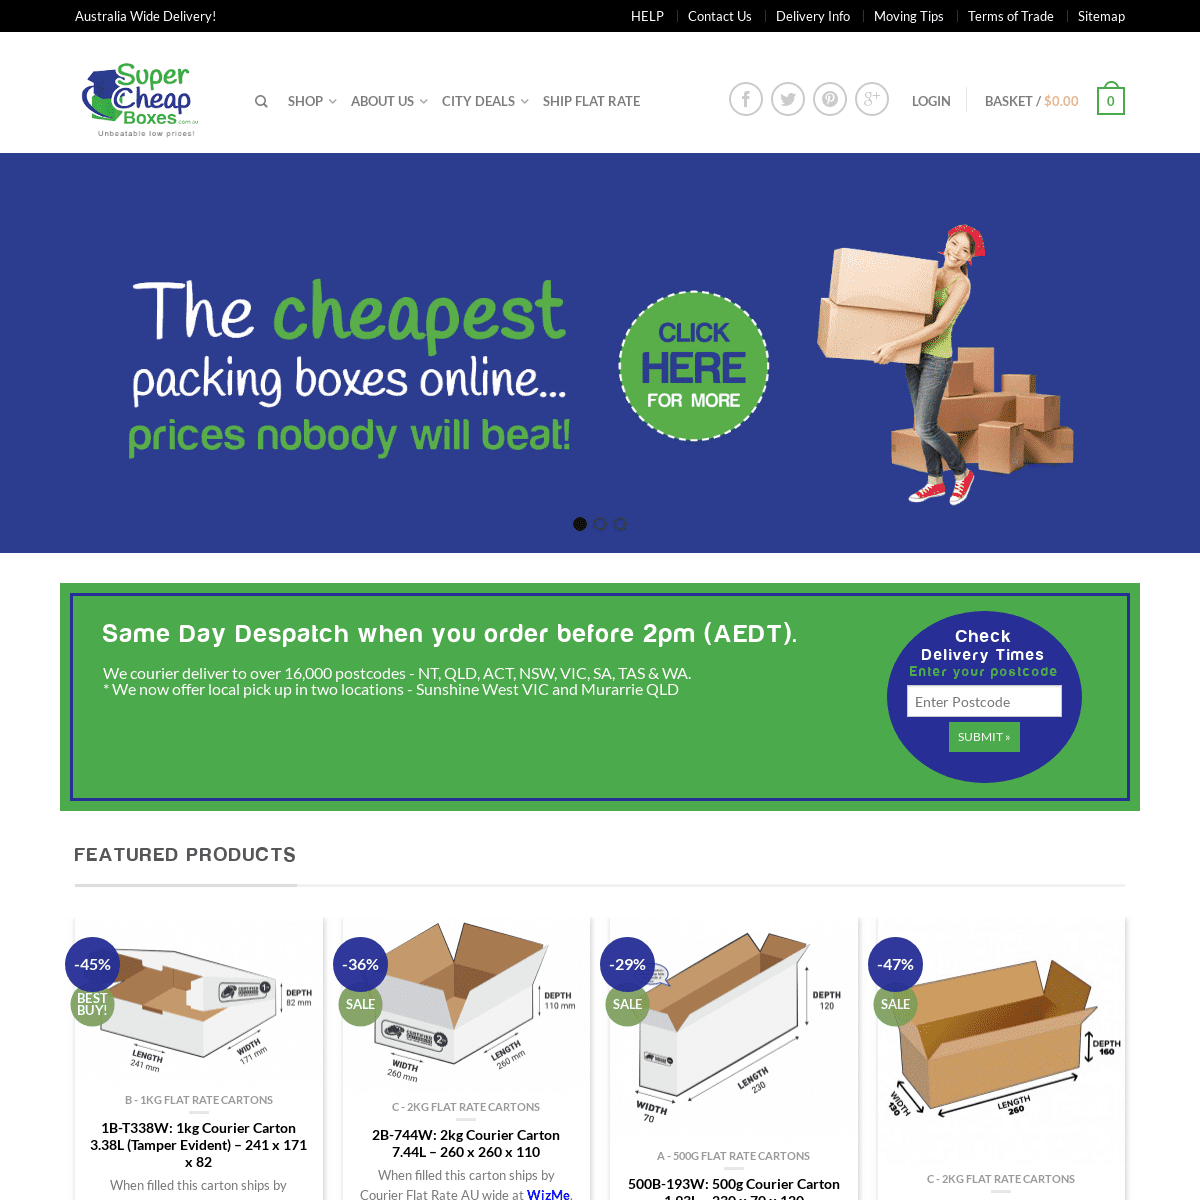 A complete backup of supercheapboxes.com.au